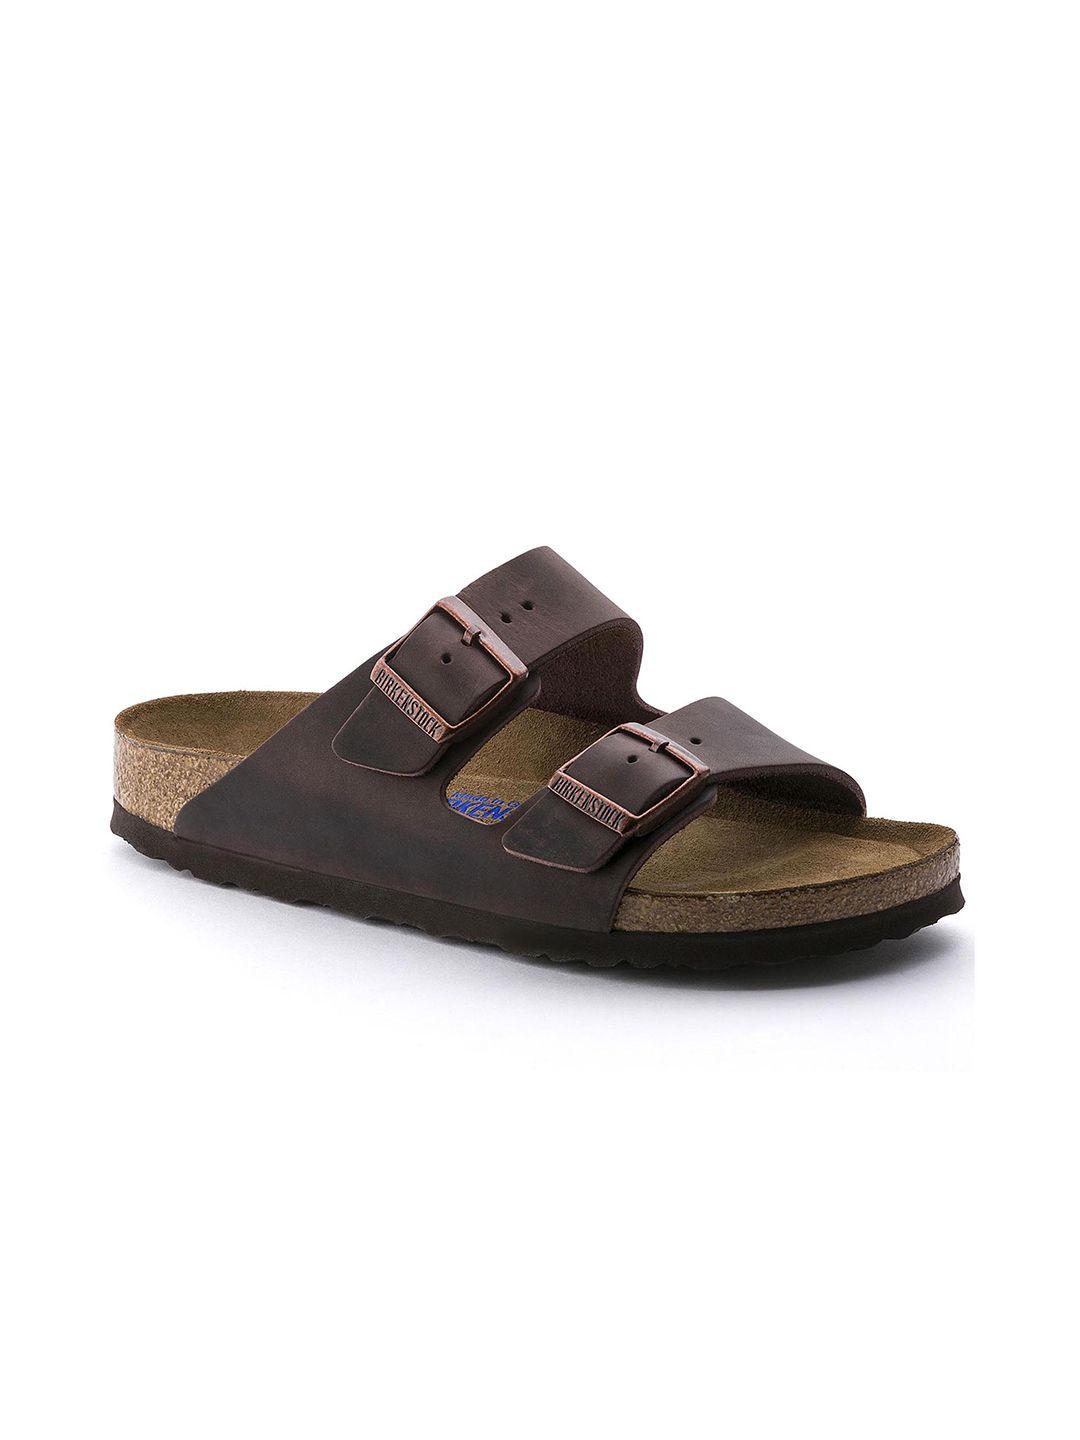 birkenstock unisex coffee brown arizona oiled leather regular width comfort sandals